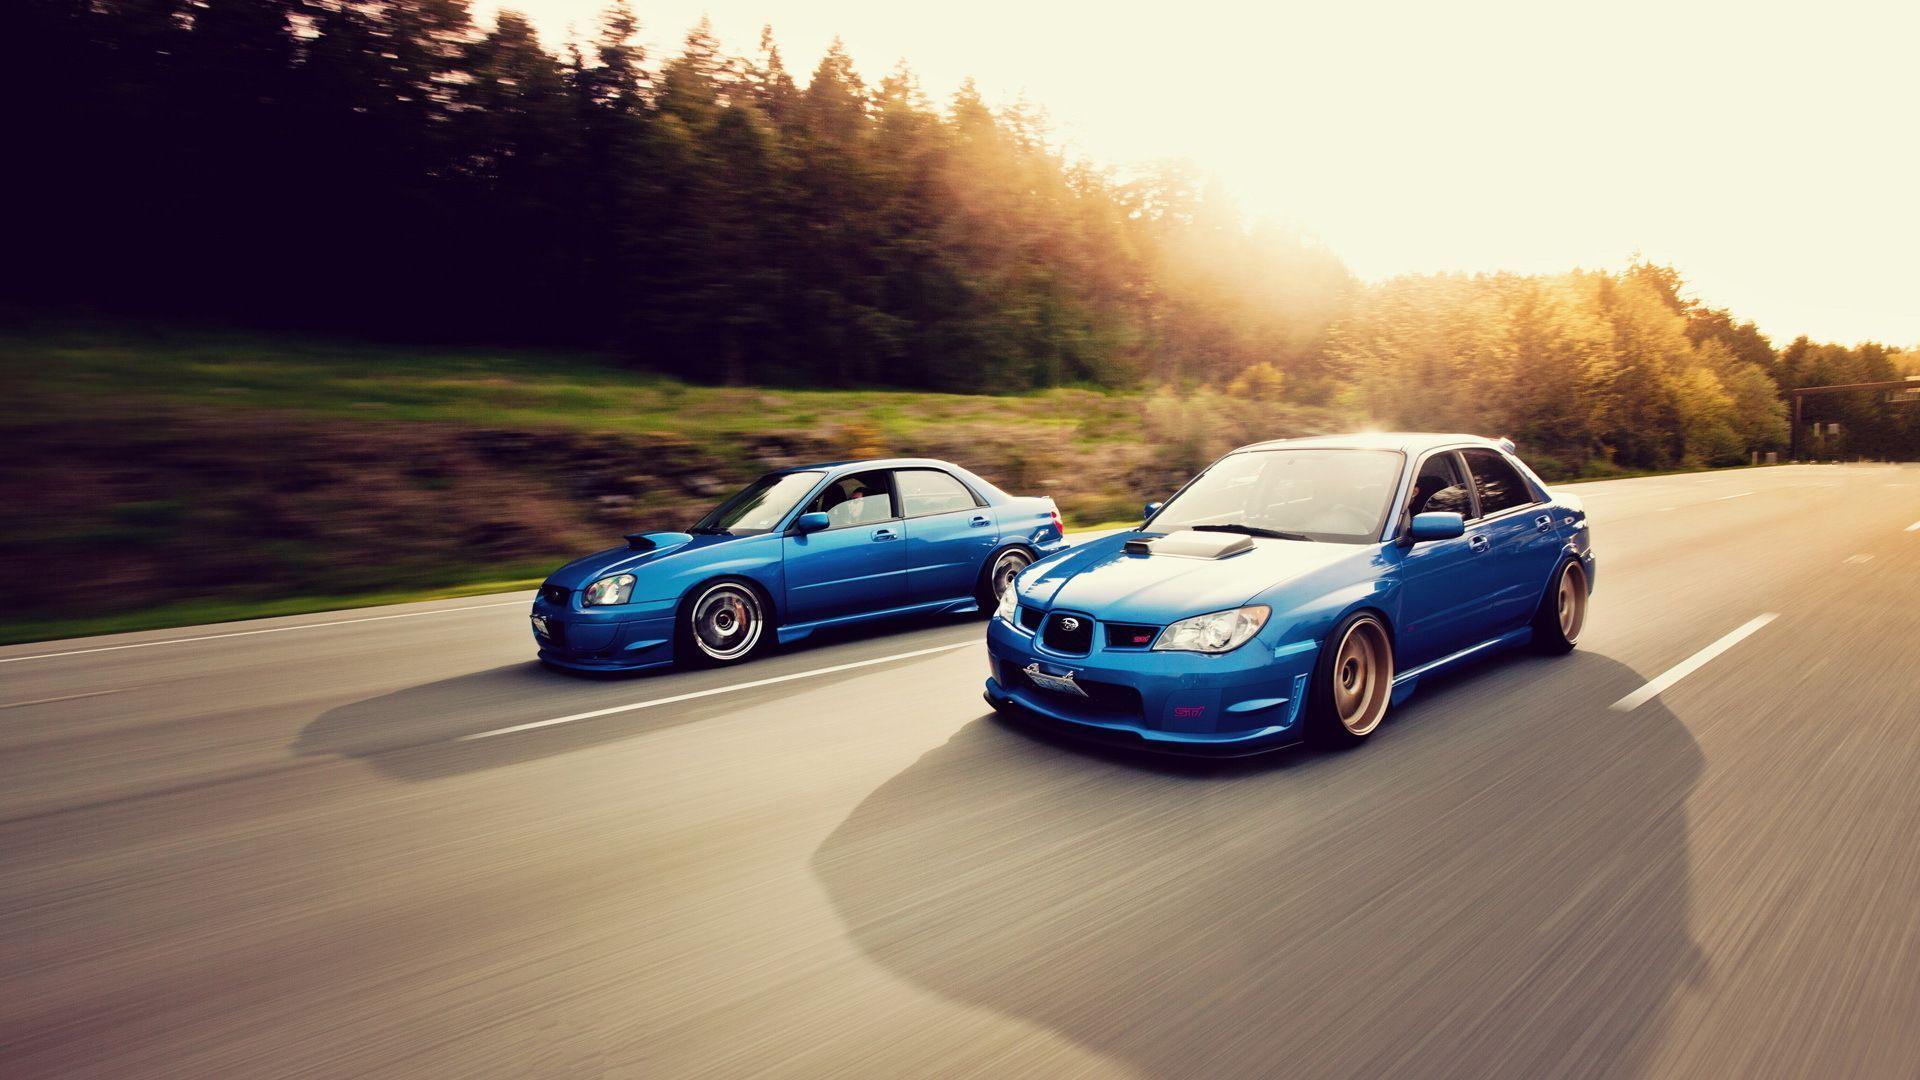 Subaru Wallpapers